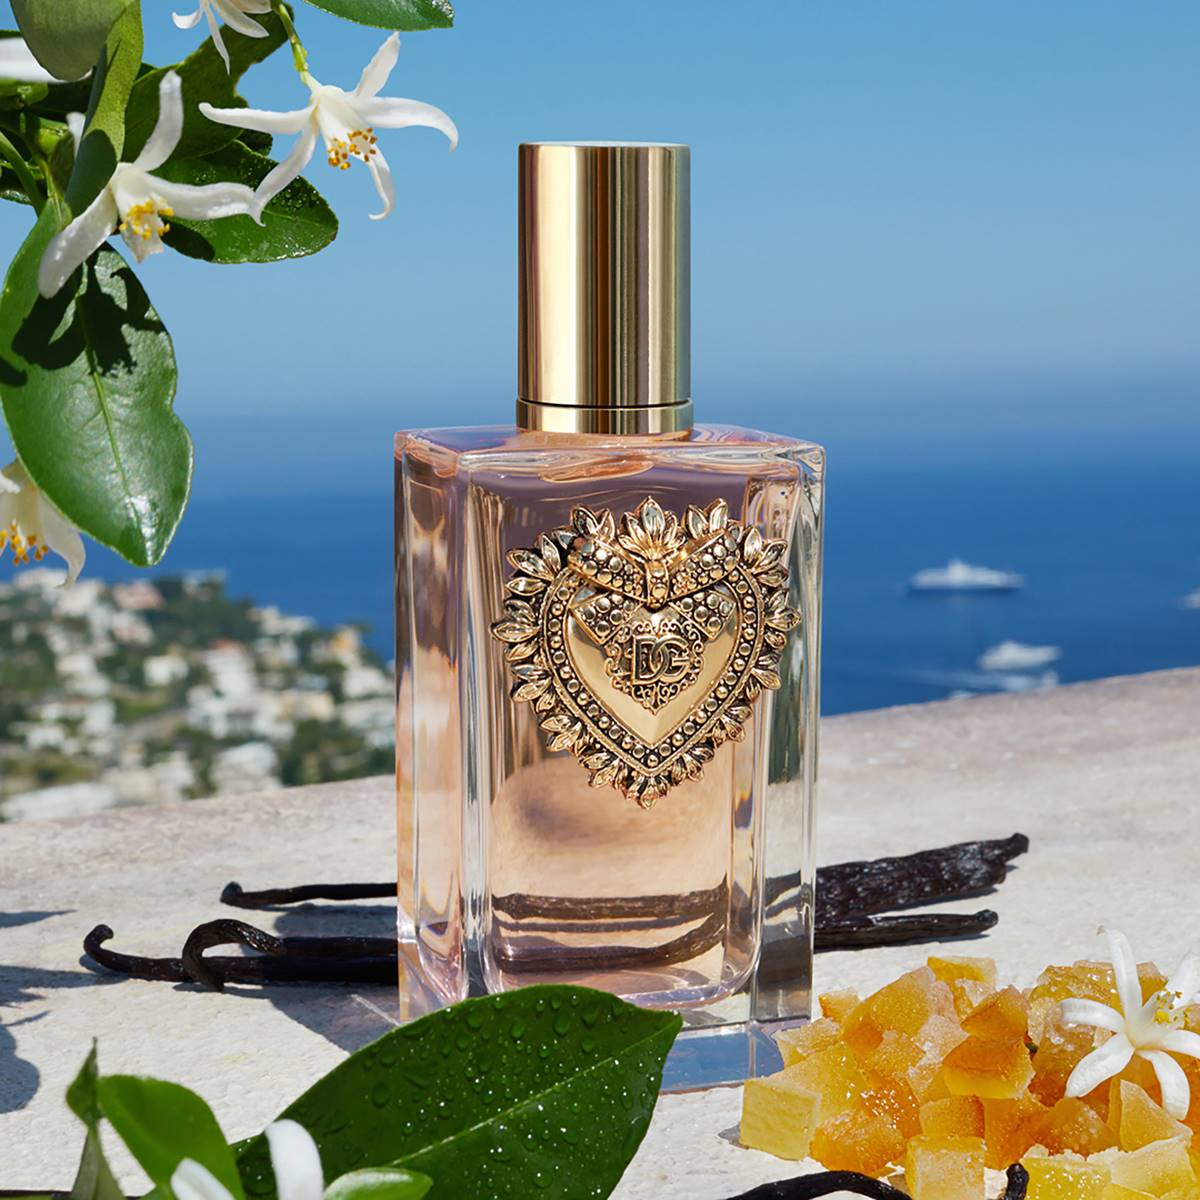 Dolce&Gabbana Devotion Eau De Parfum